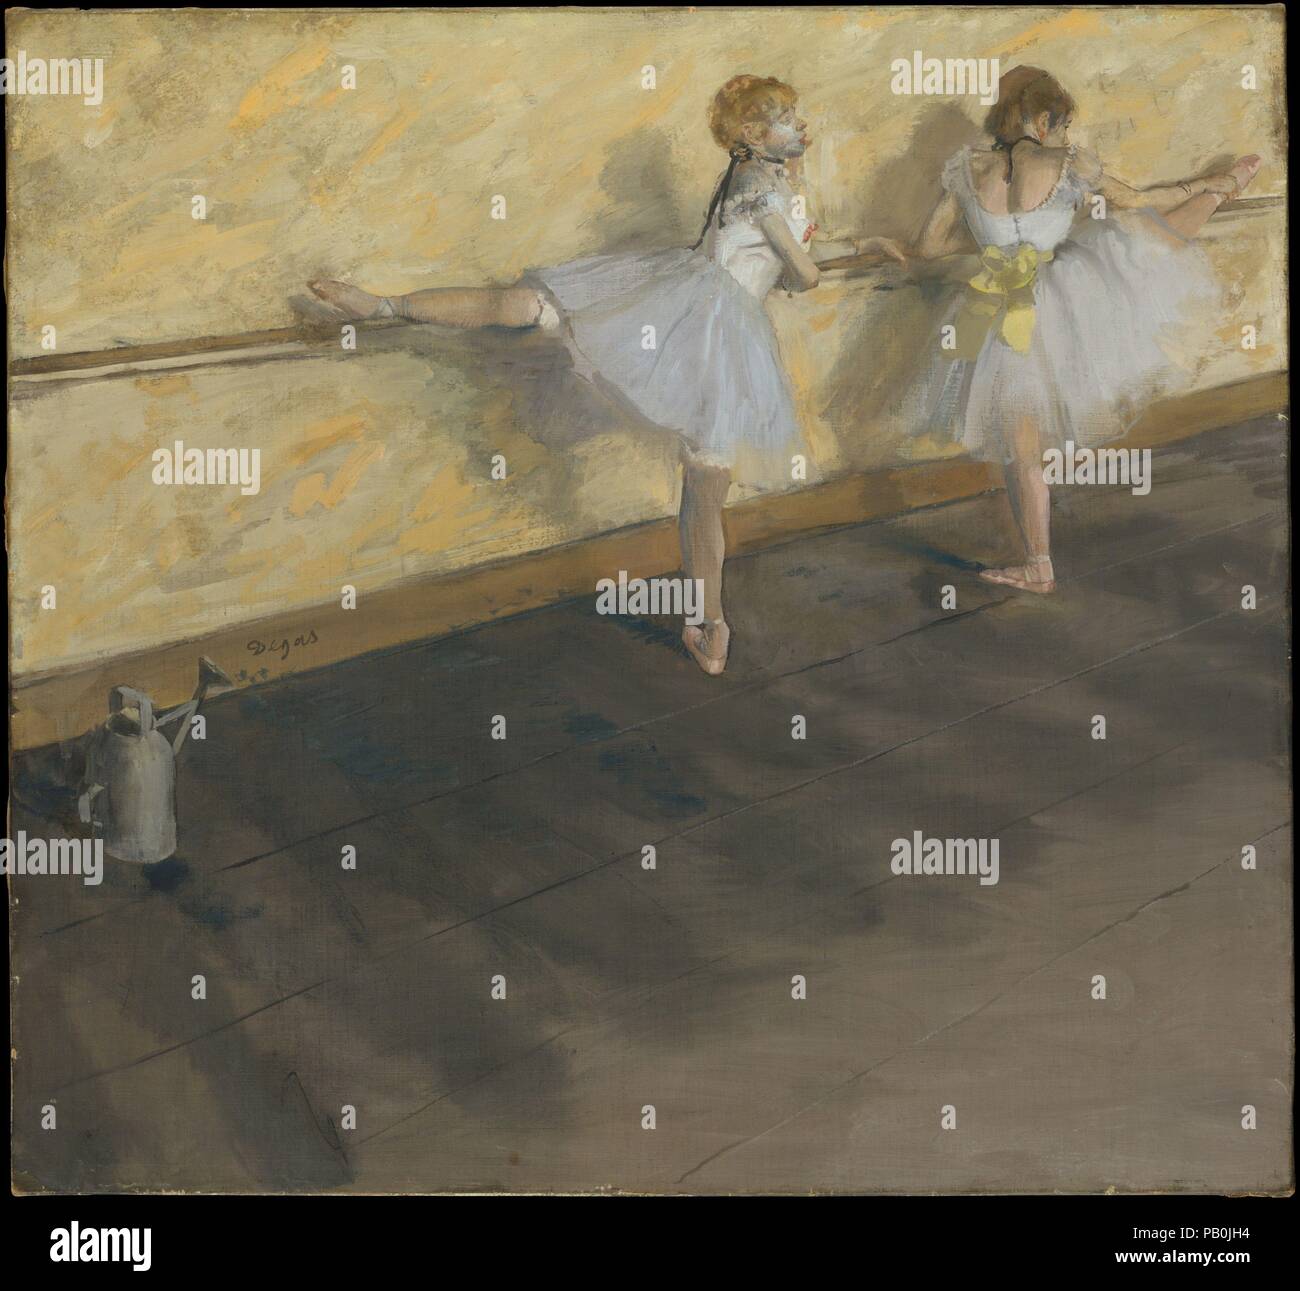 I ballerini di praticare a barre. Artista: Edgar Degas (francese, Parigi Parigi 1834-1917). Dimensioni: 29 3/4 x 32 in. (75,6 x 81,3 cm). Data: 1877. L' annaffiatoio, visibile a sinistra, era una attrezzatura standard nel balletto le sale prove; l'acqua è stata spruzzata sul pavimento per impedire che la polvere di sollevarsi quando ballerine ballavano. Degas utilizzato anche l'innaffiamento può come visual pun: la sua forma è imitato da quella del ballerino alla destra. Mostrate al 1877 mostra impressionista, il dipinto fu dato Da Degas a collettore Henri Rouart come una sostituzione per un precedente lavoro (ora perso), che l'artista alterato e Foto Stock